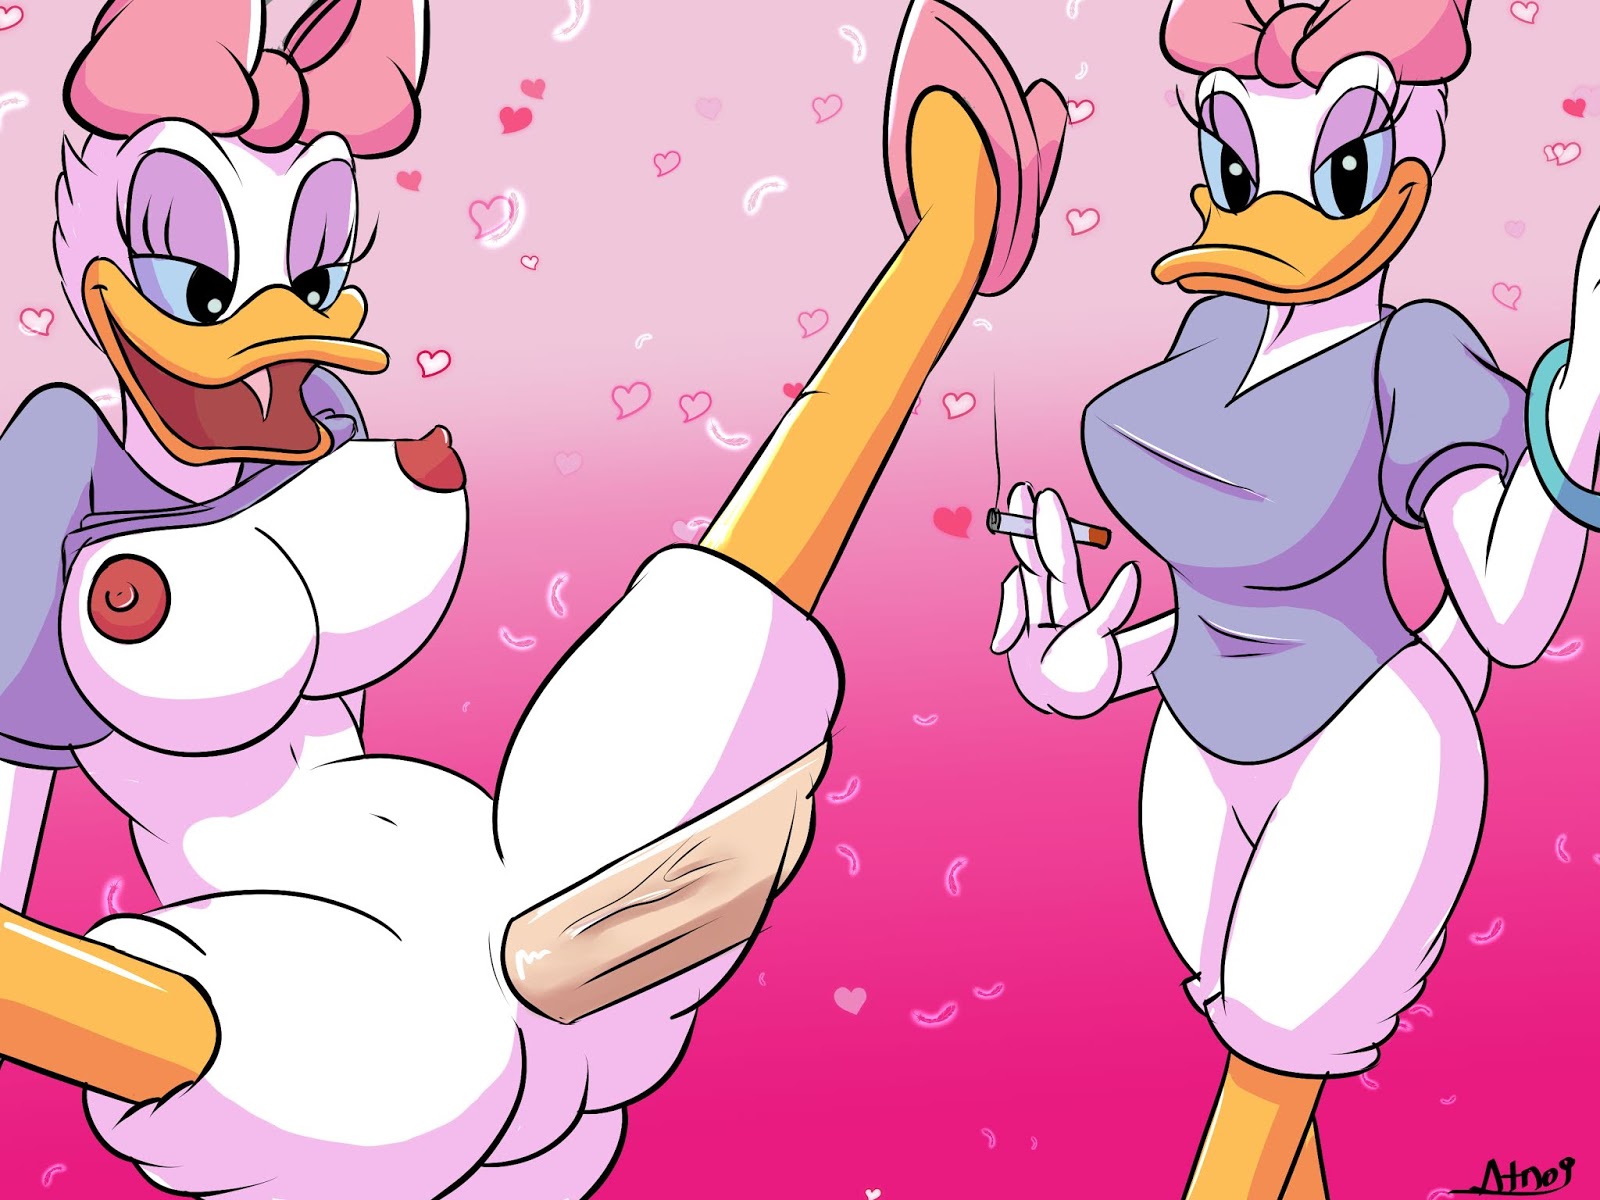 Daisy duck nude 💖 Xbooru - ass breasts cum cum drip cum insi